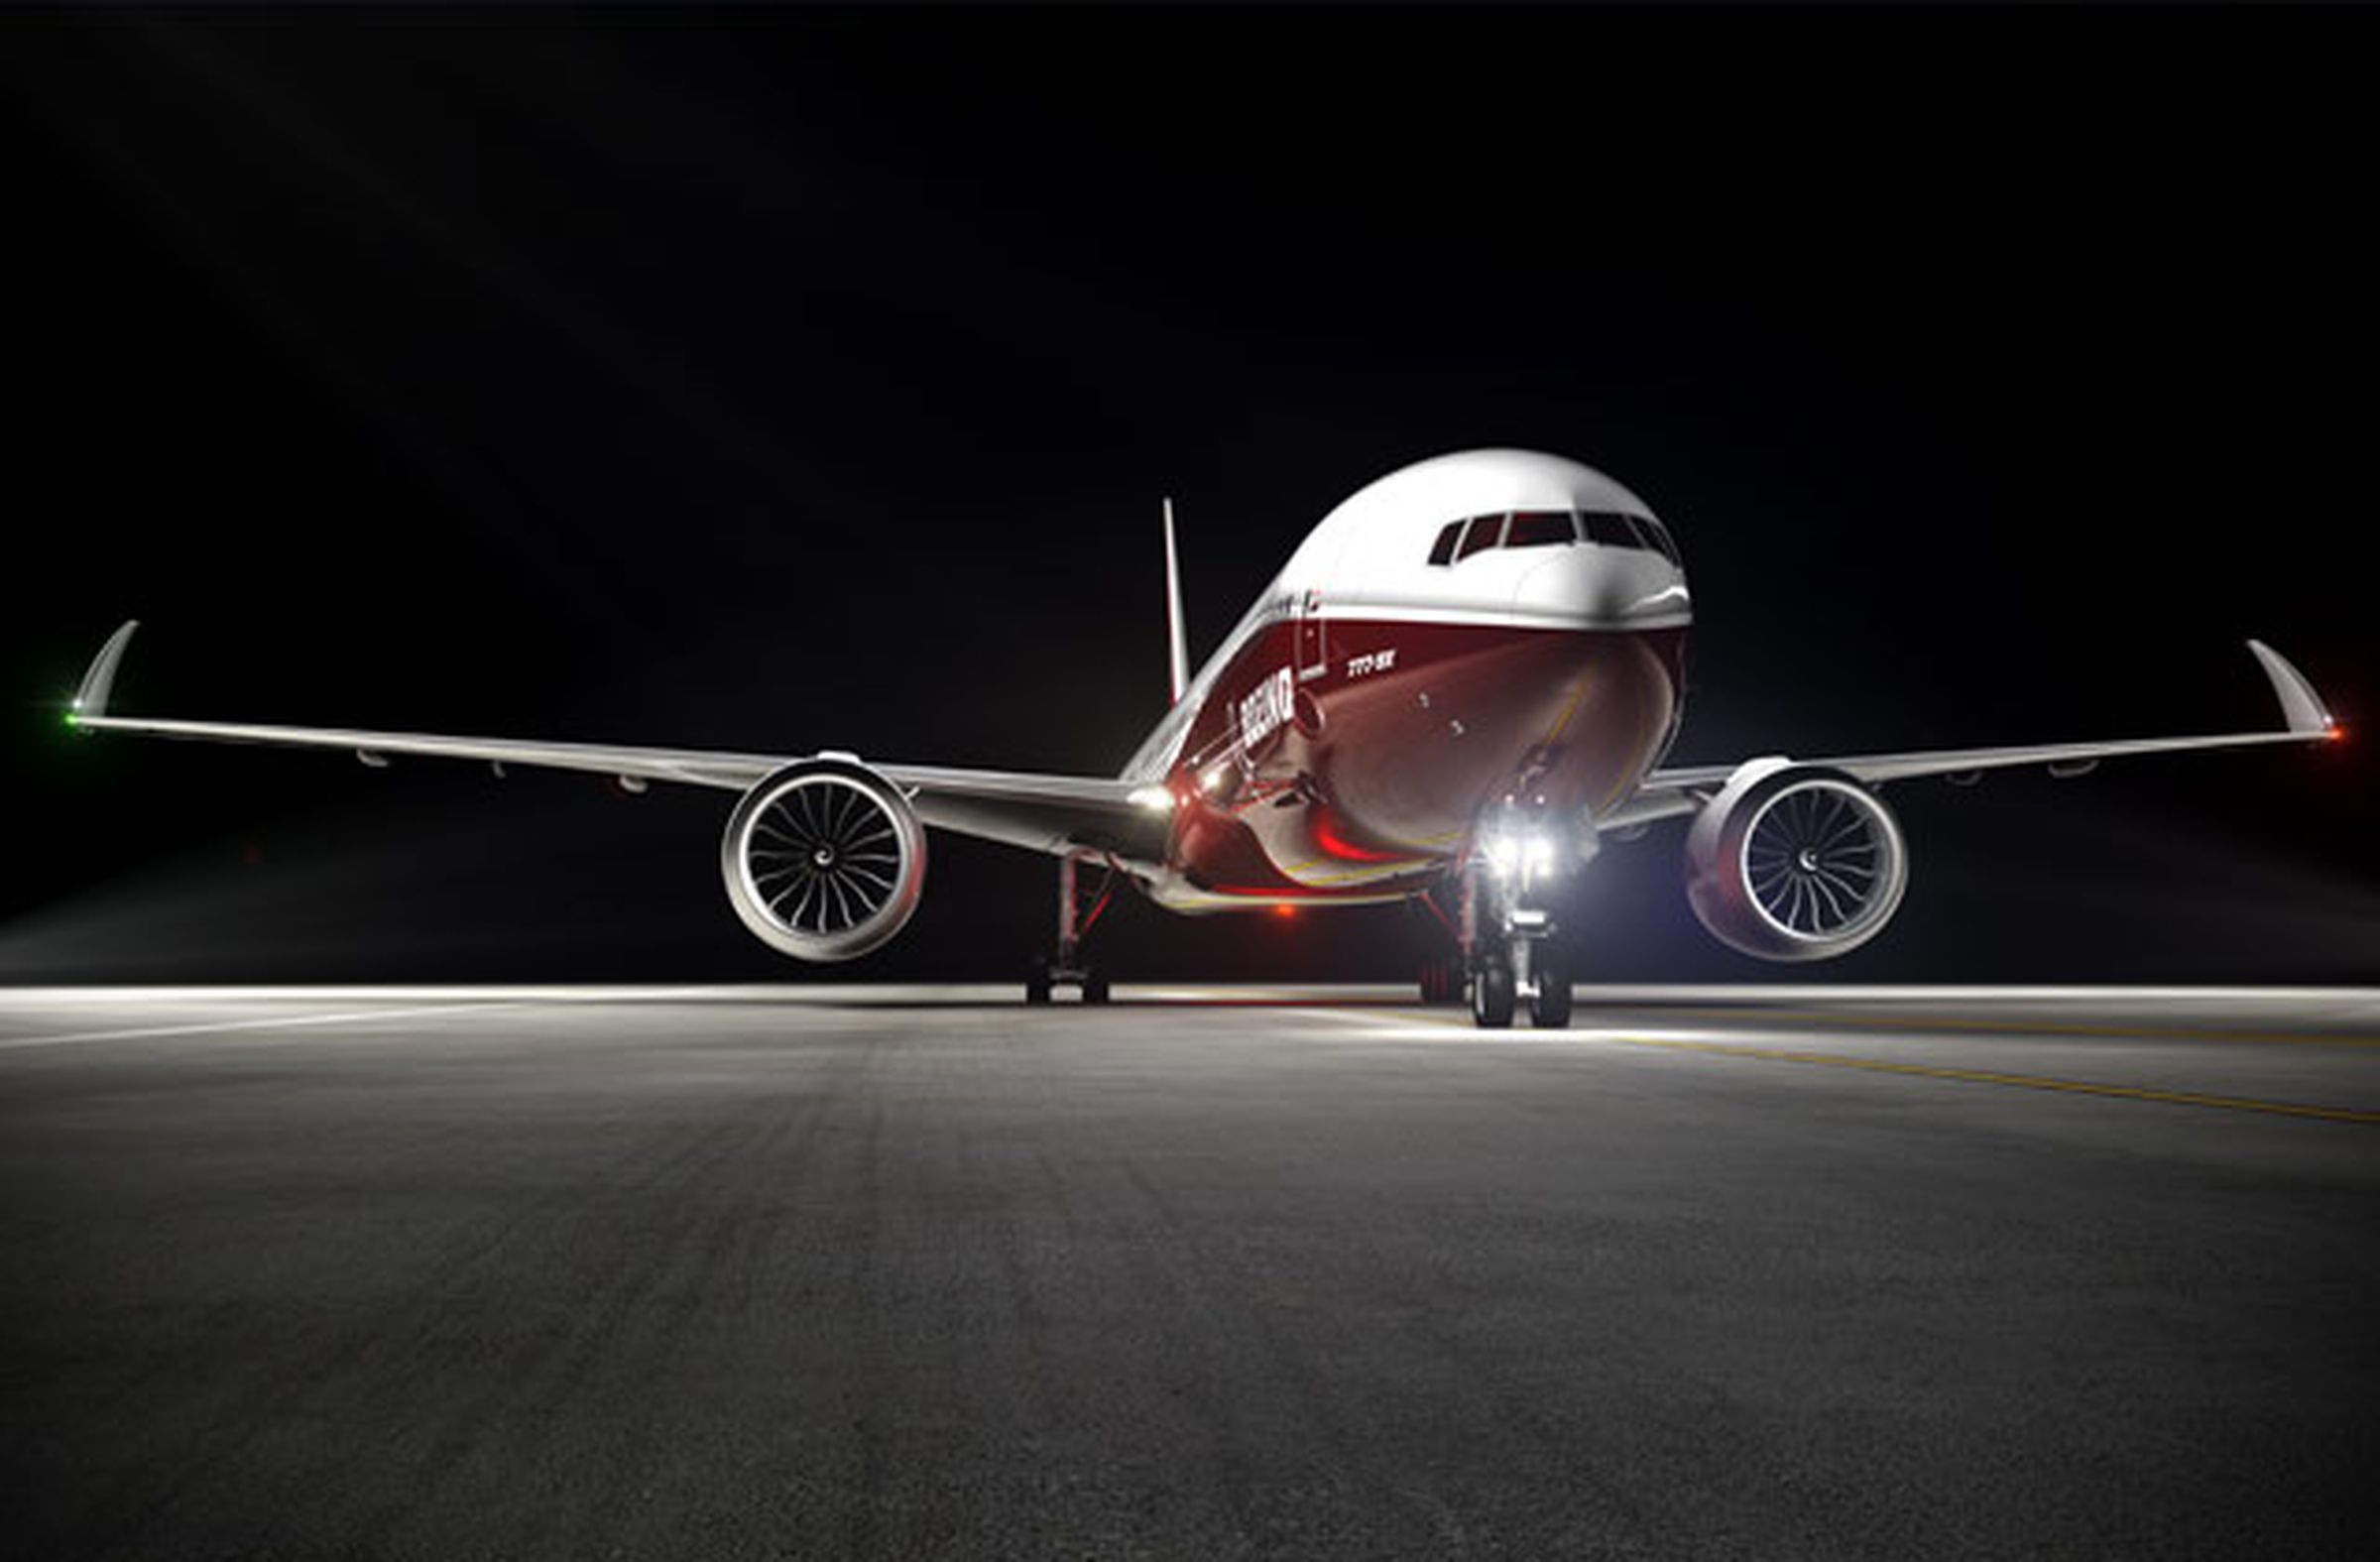 Boeing 777X renders